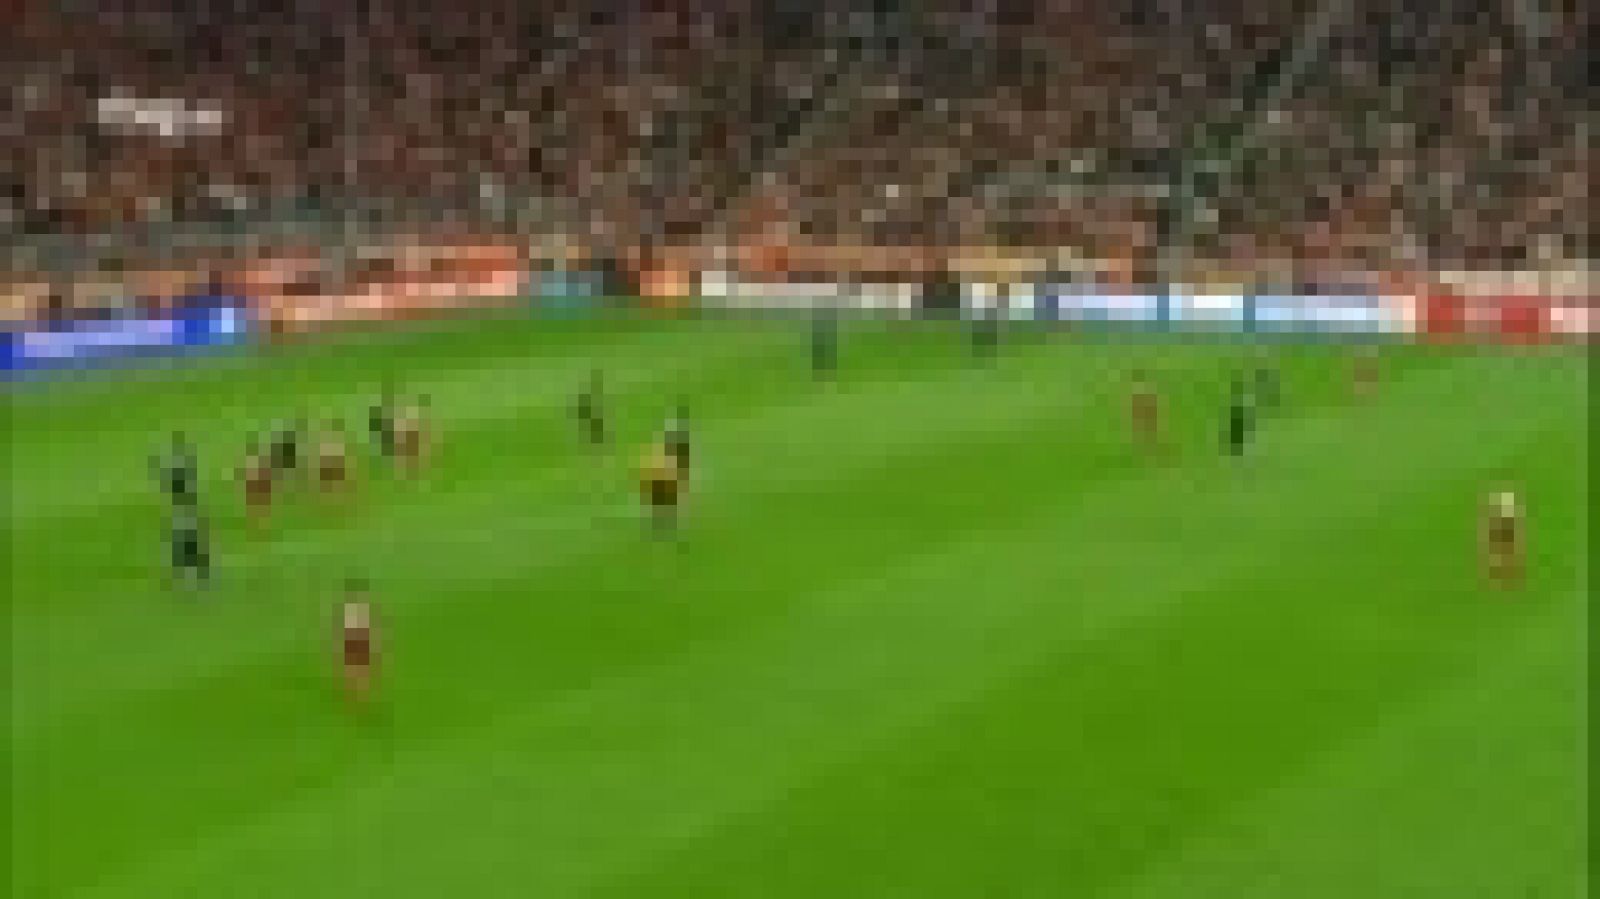 El centrocampista español del Bayern de Munich Thiago Alcántara ha marcado el primer gol ante el Oporto (1-0) en el minuto 14 de juego, tras aprovechar un pase de su compatriota Bernat.